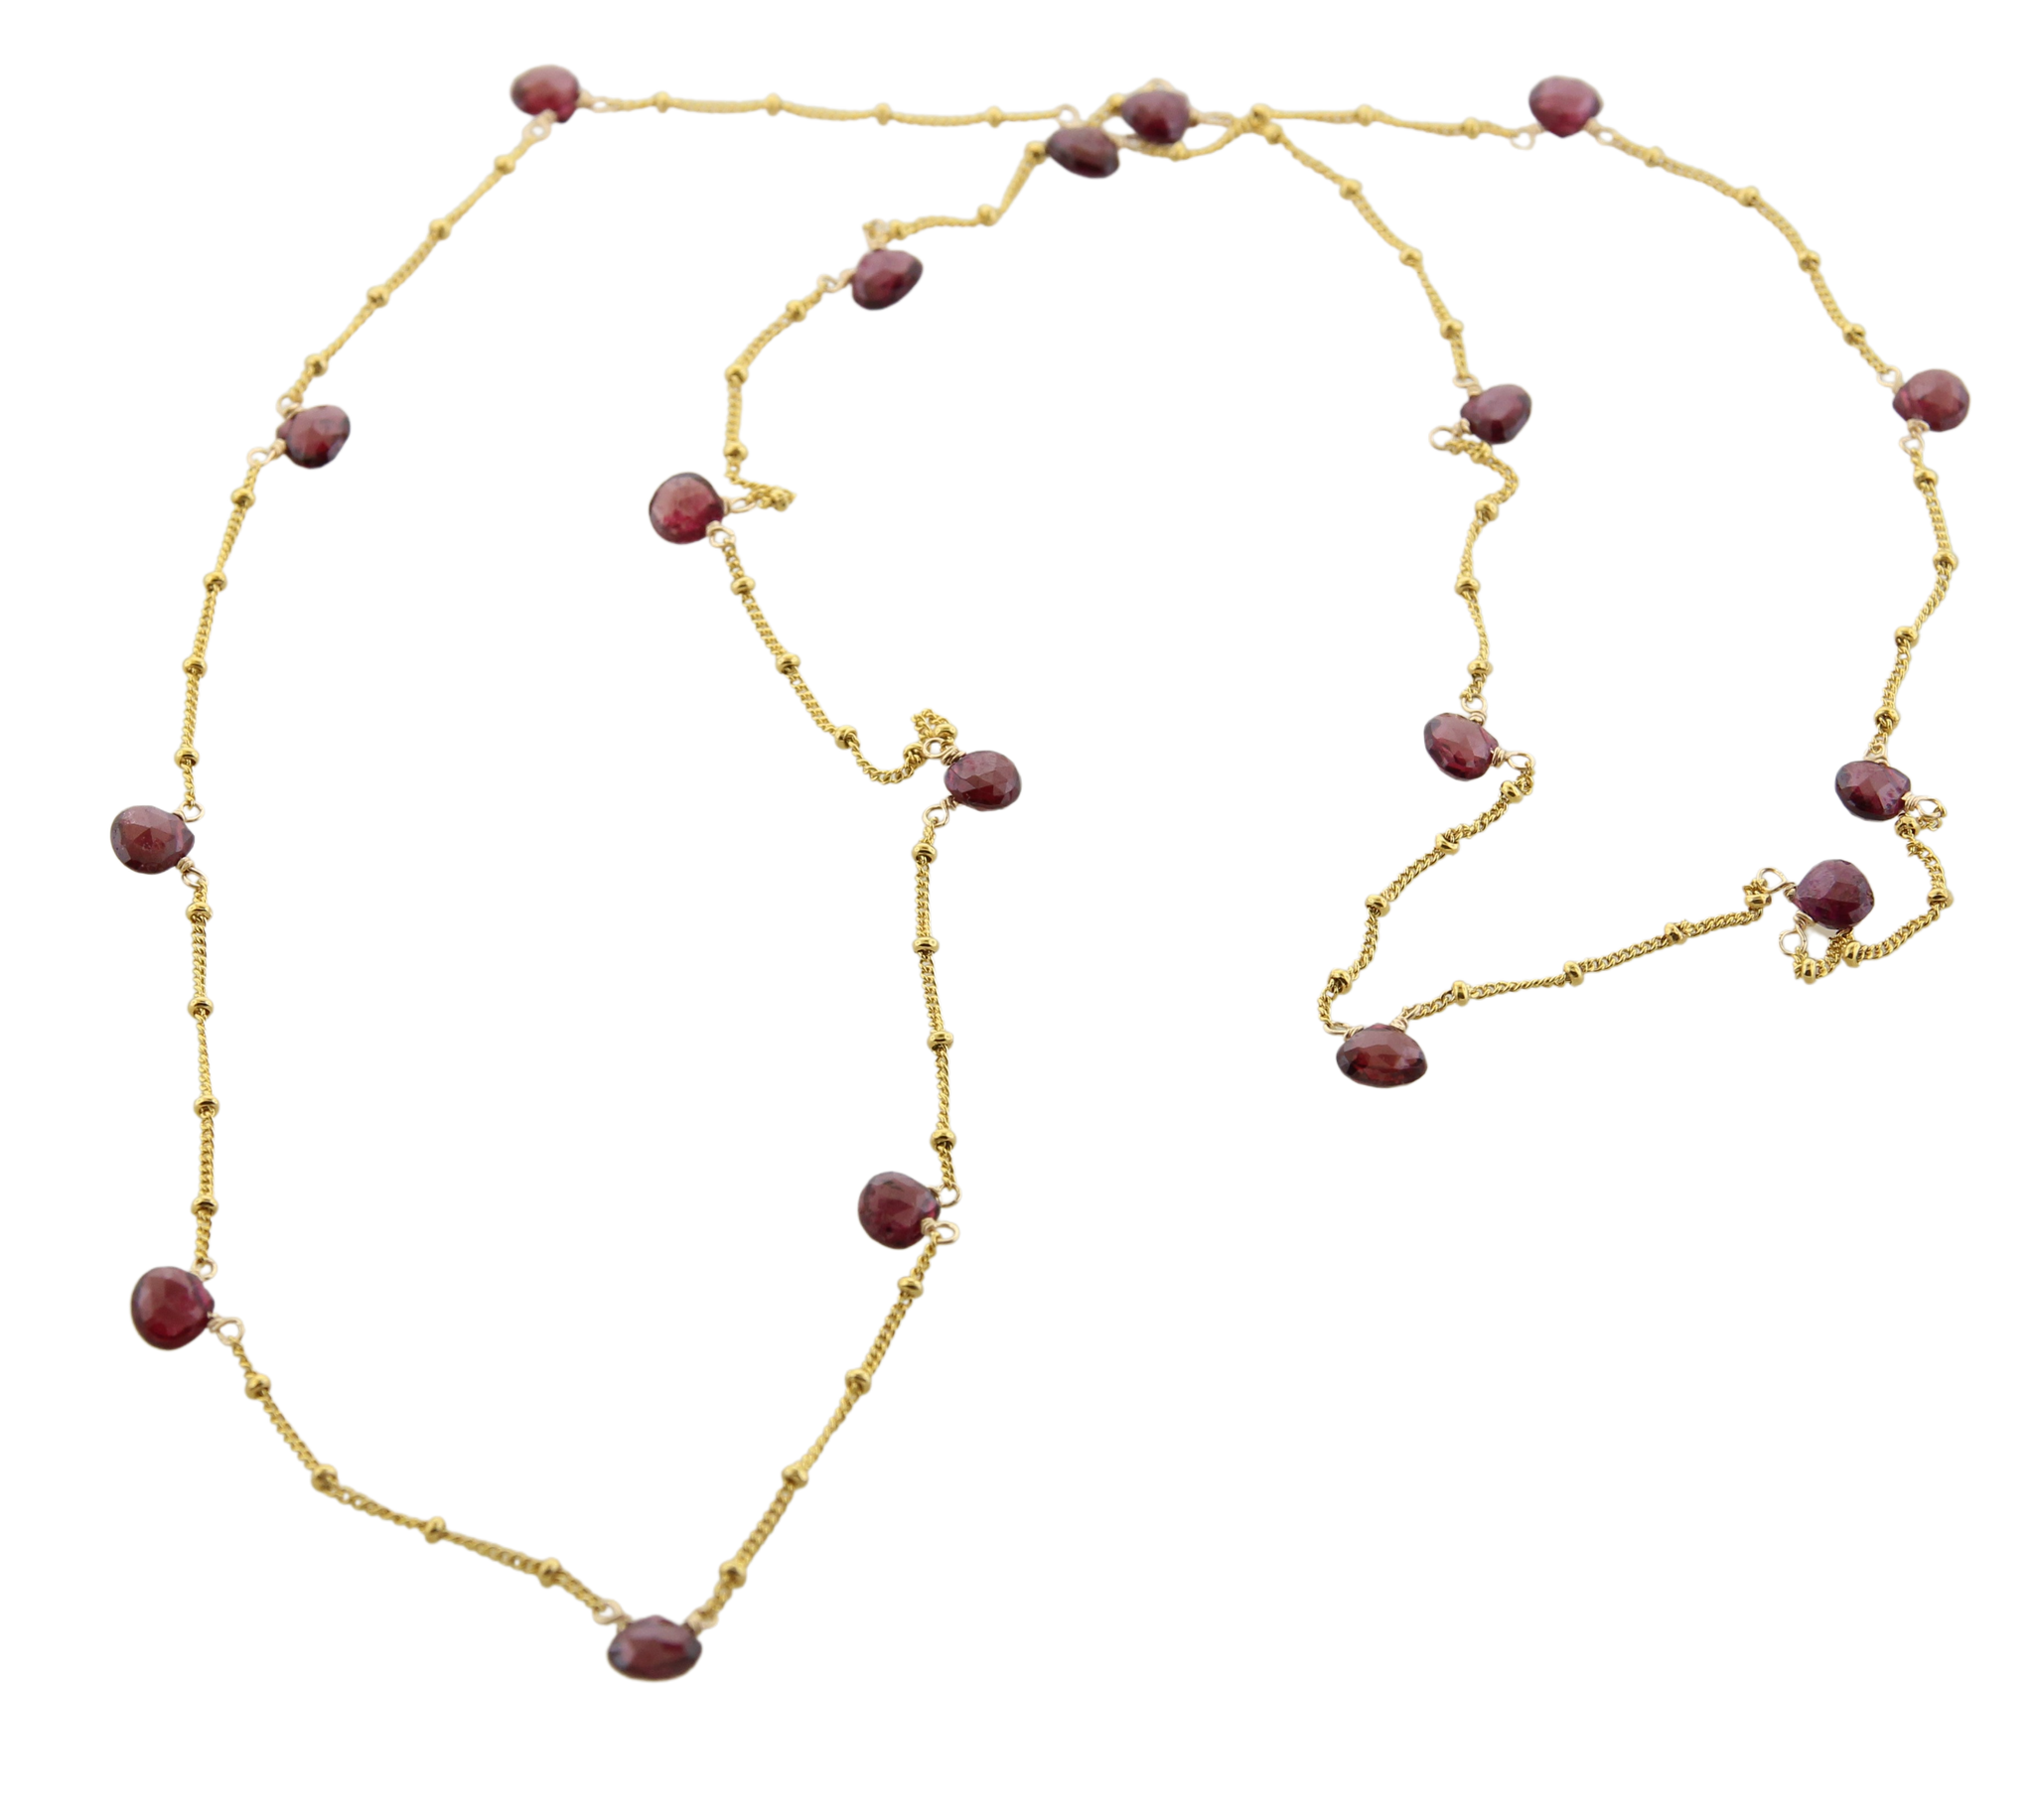 Ethereal Necklace - Garnet